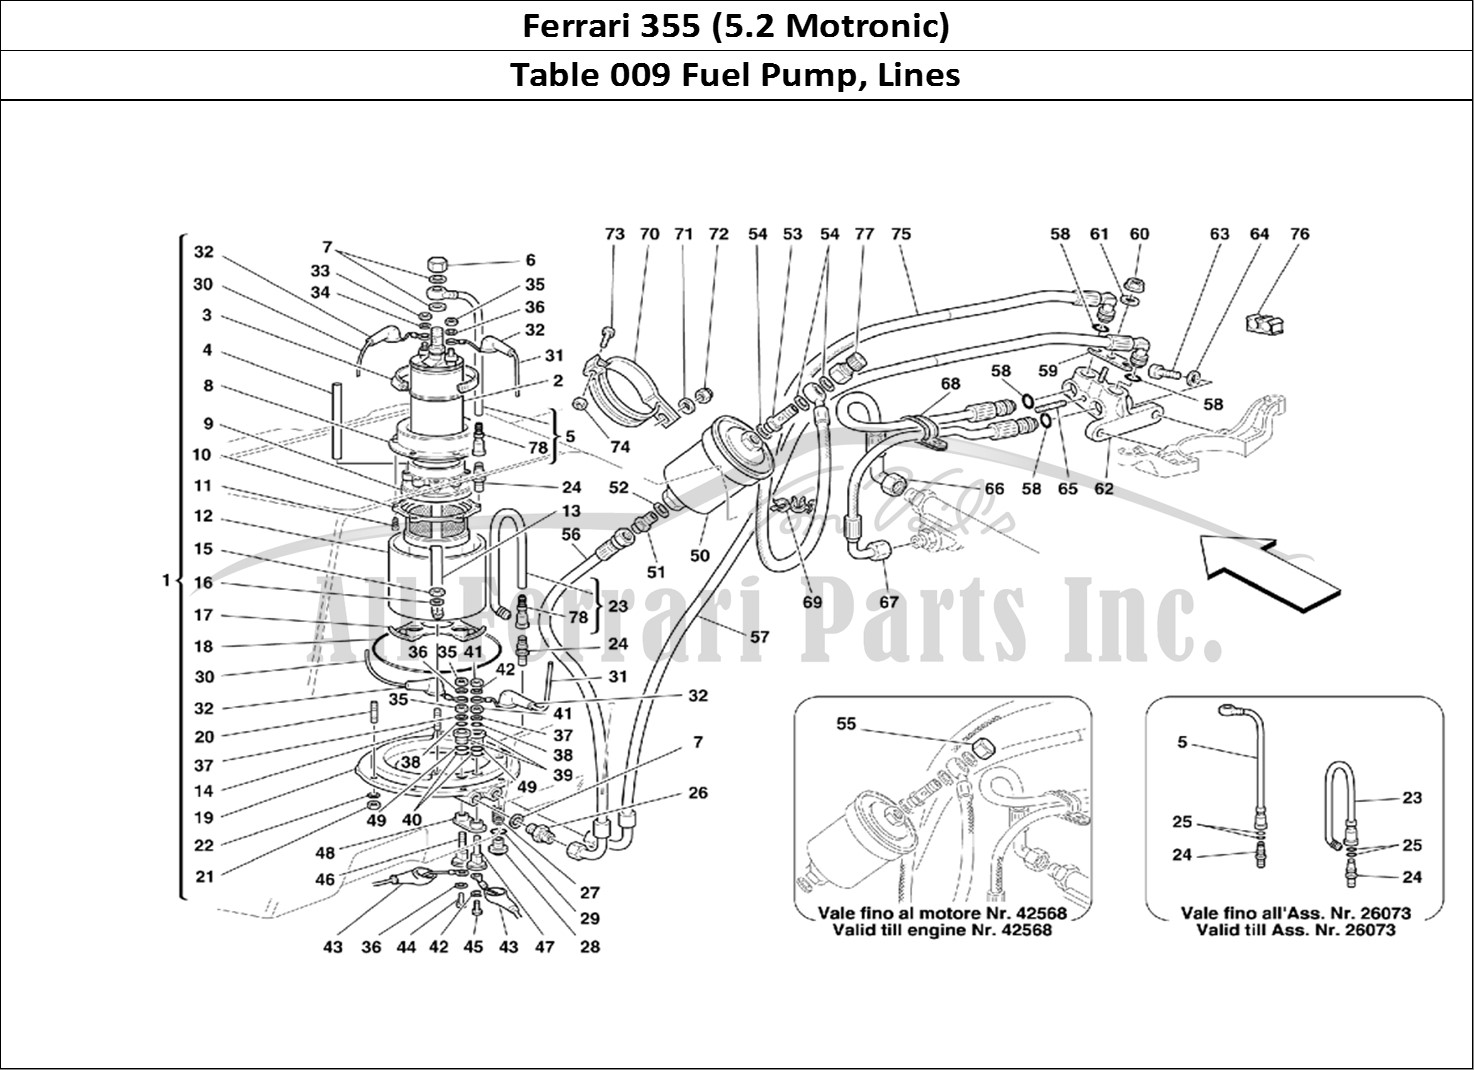 Ferrari Parts Ferrari 355 (5.2 Motronic) Page 009 Fuel Pump and Pipes